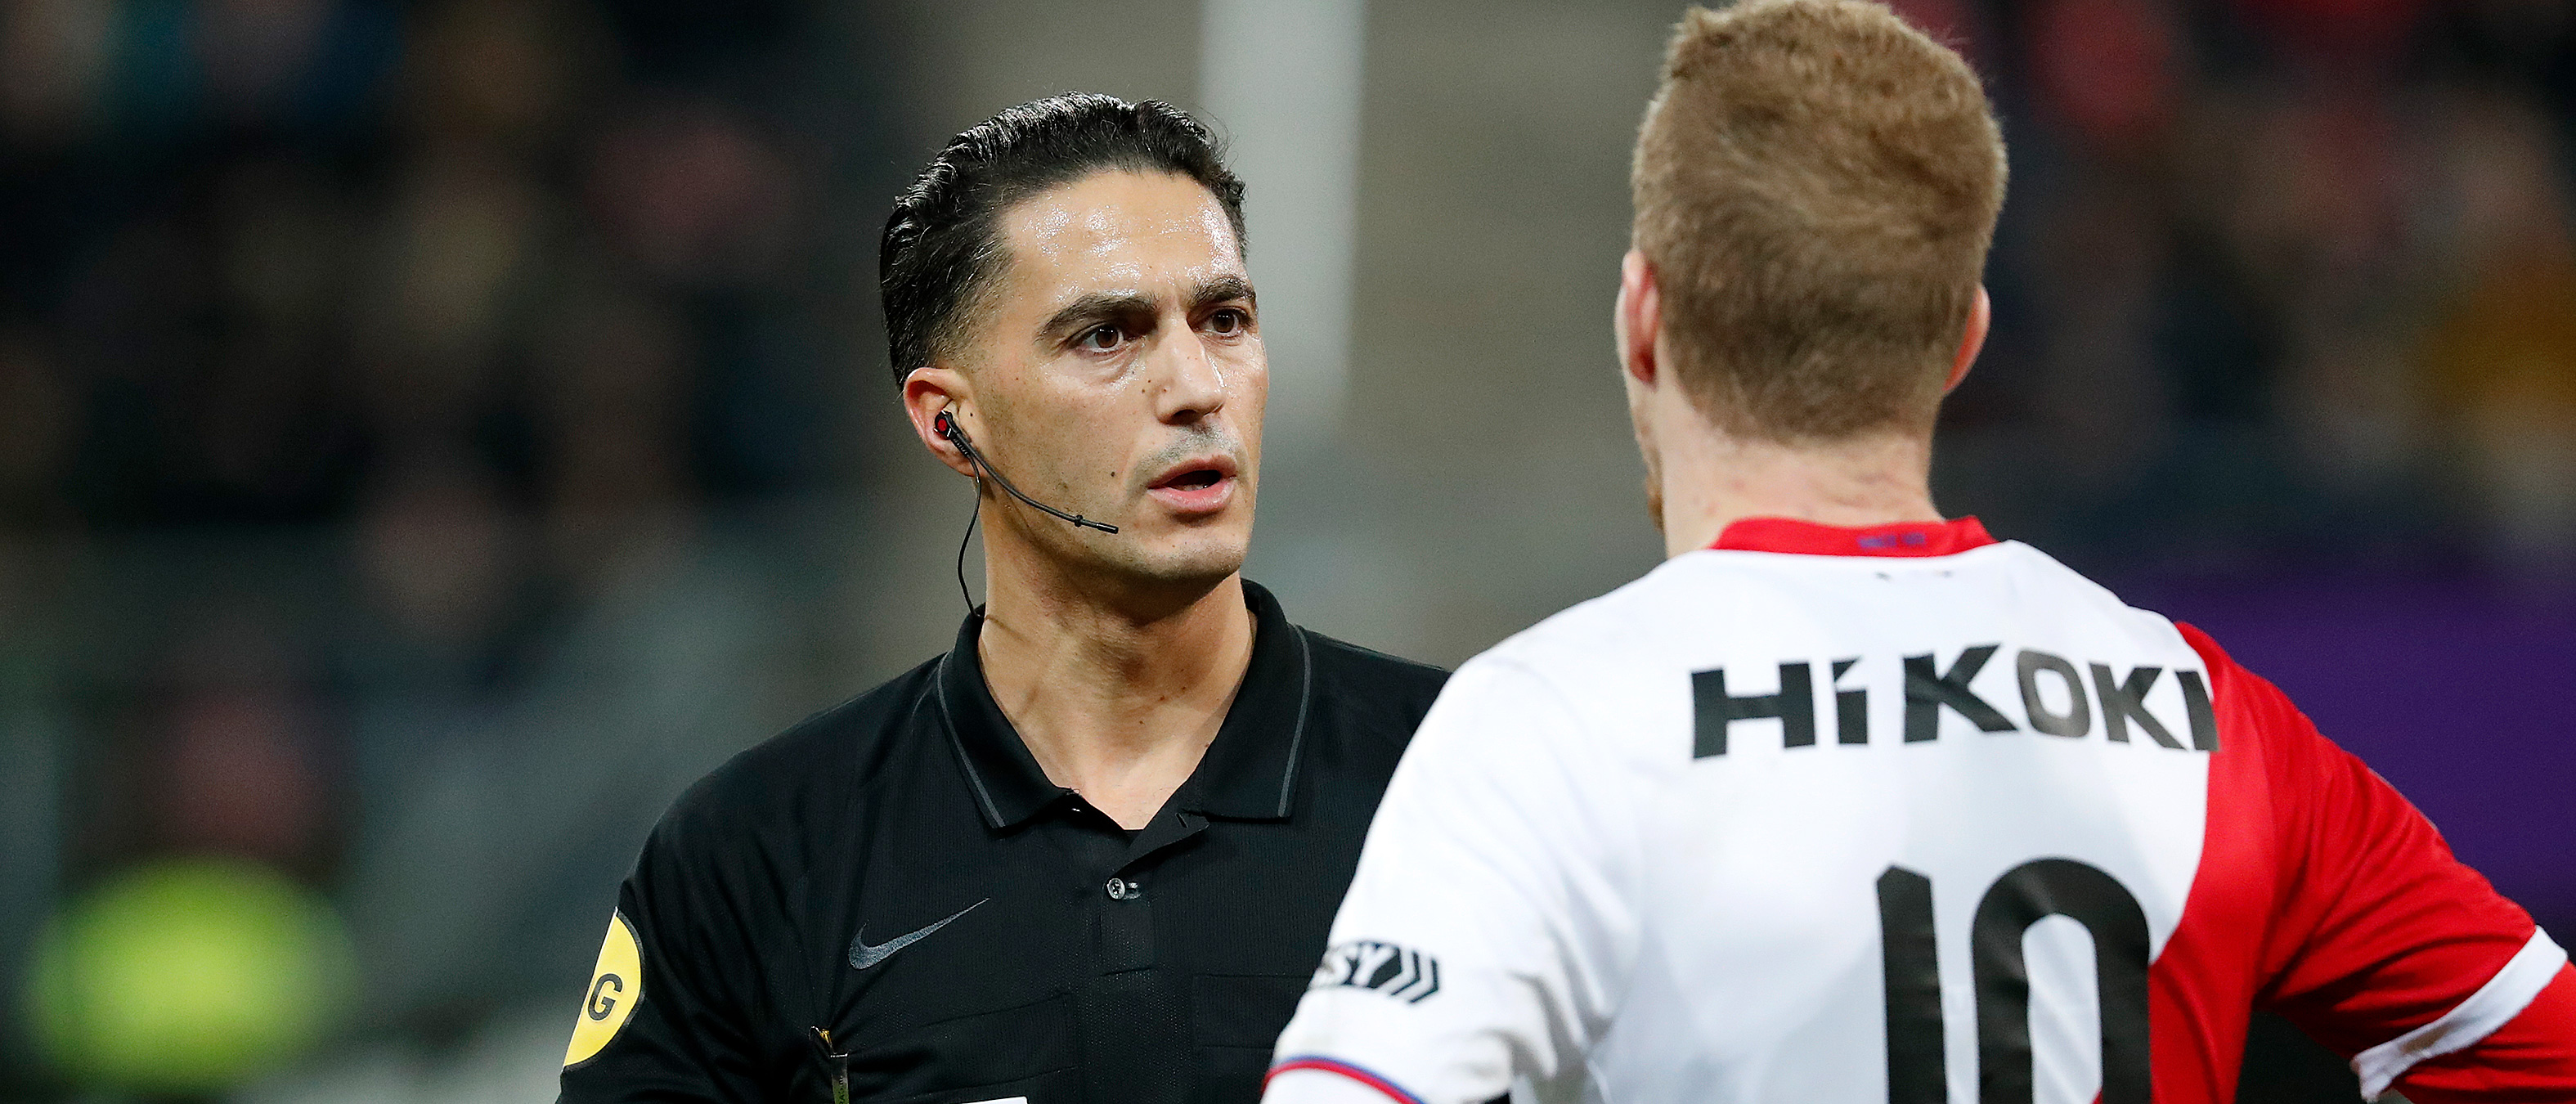 Gözübüyük leidt FC Utrecht - Feyenoord